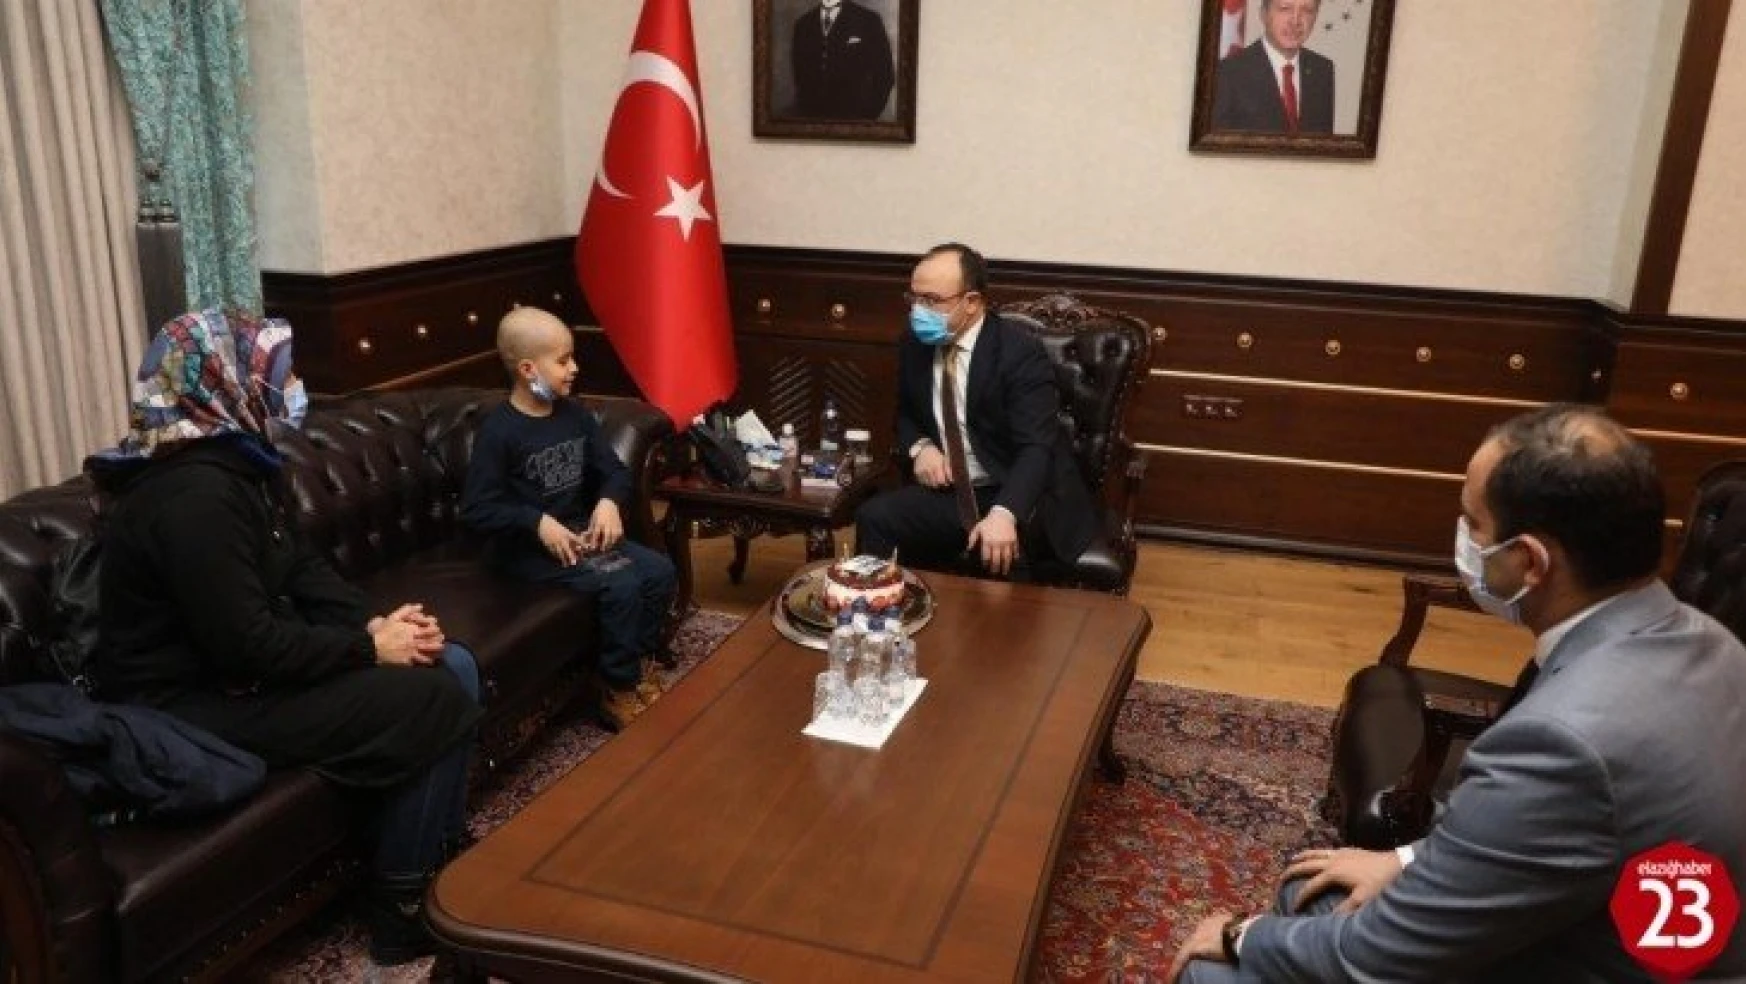 Cumhurbaşkanı Erdoğan'ın tedavisini üstlendiği Taha'ya doğum günü